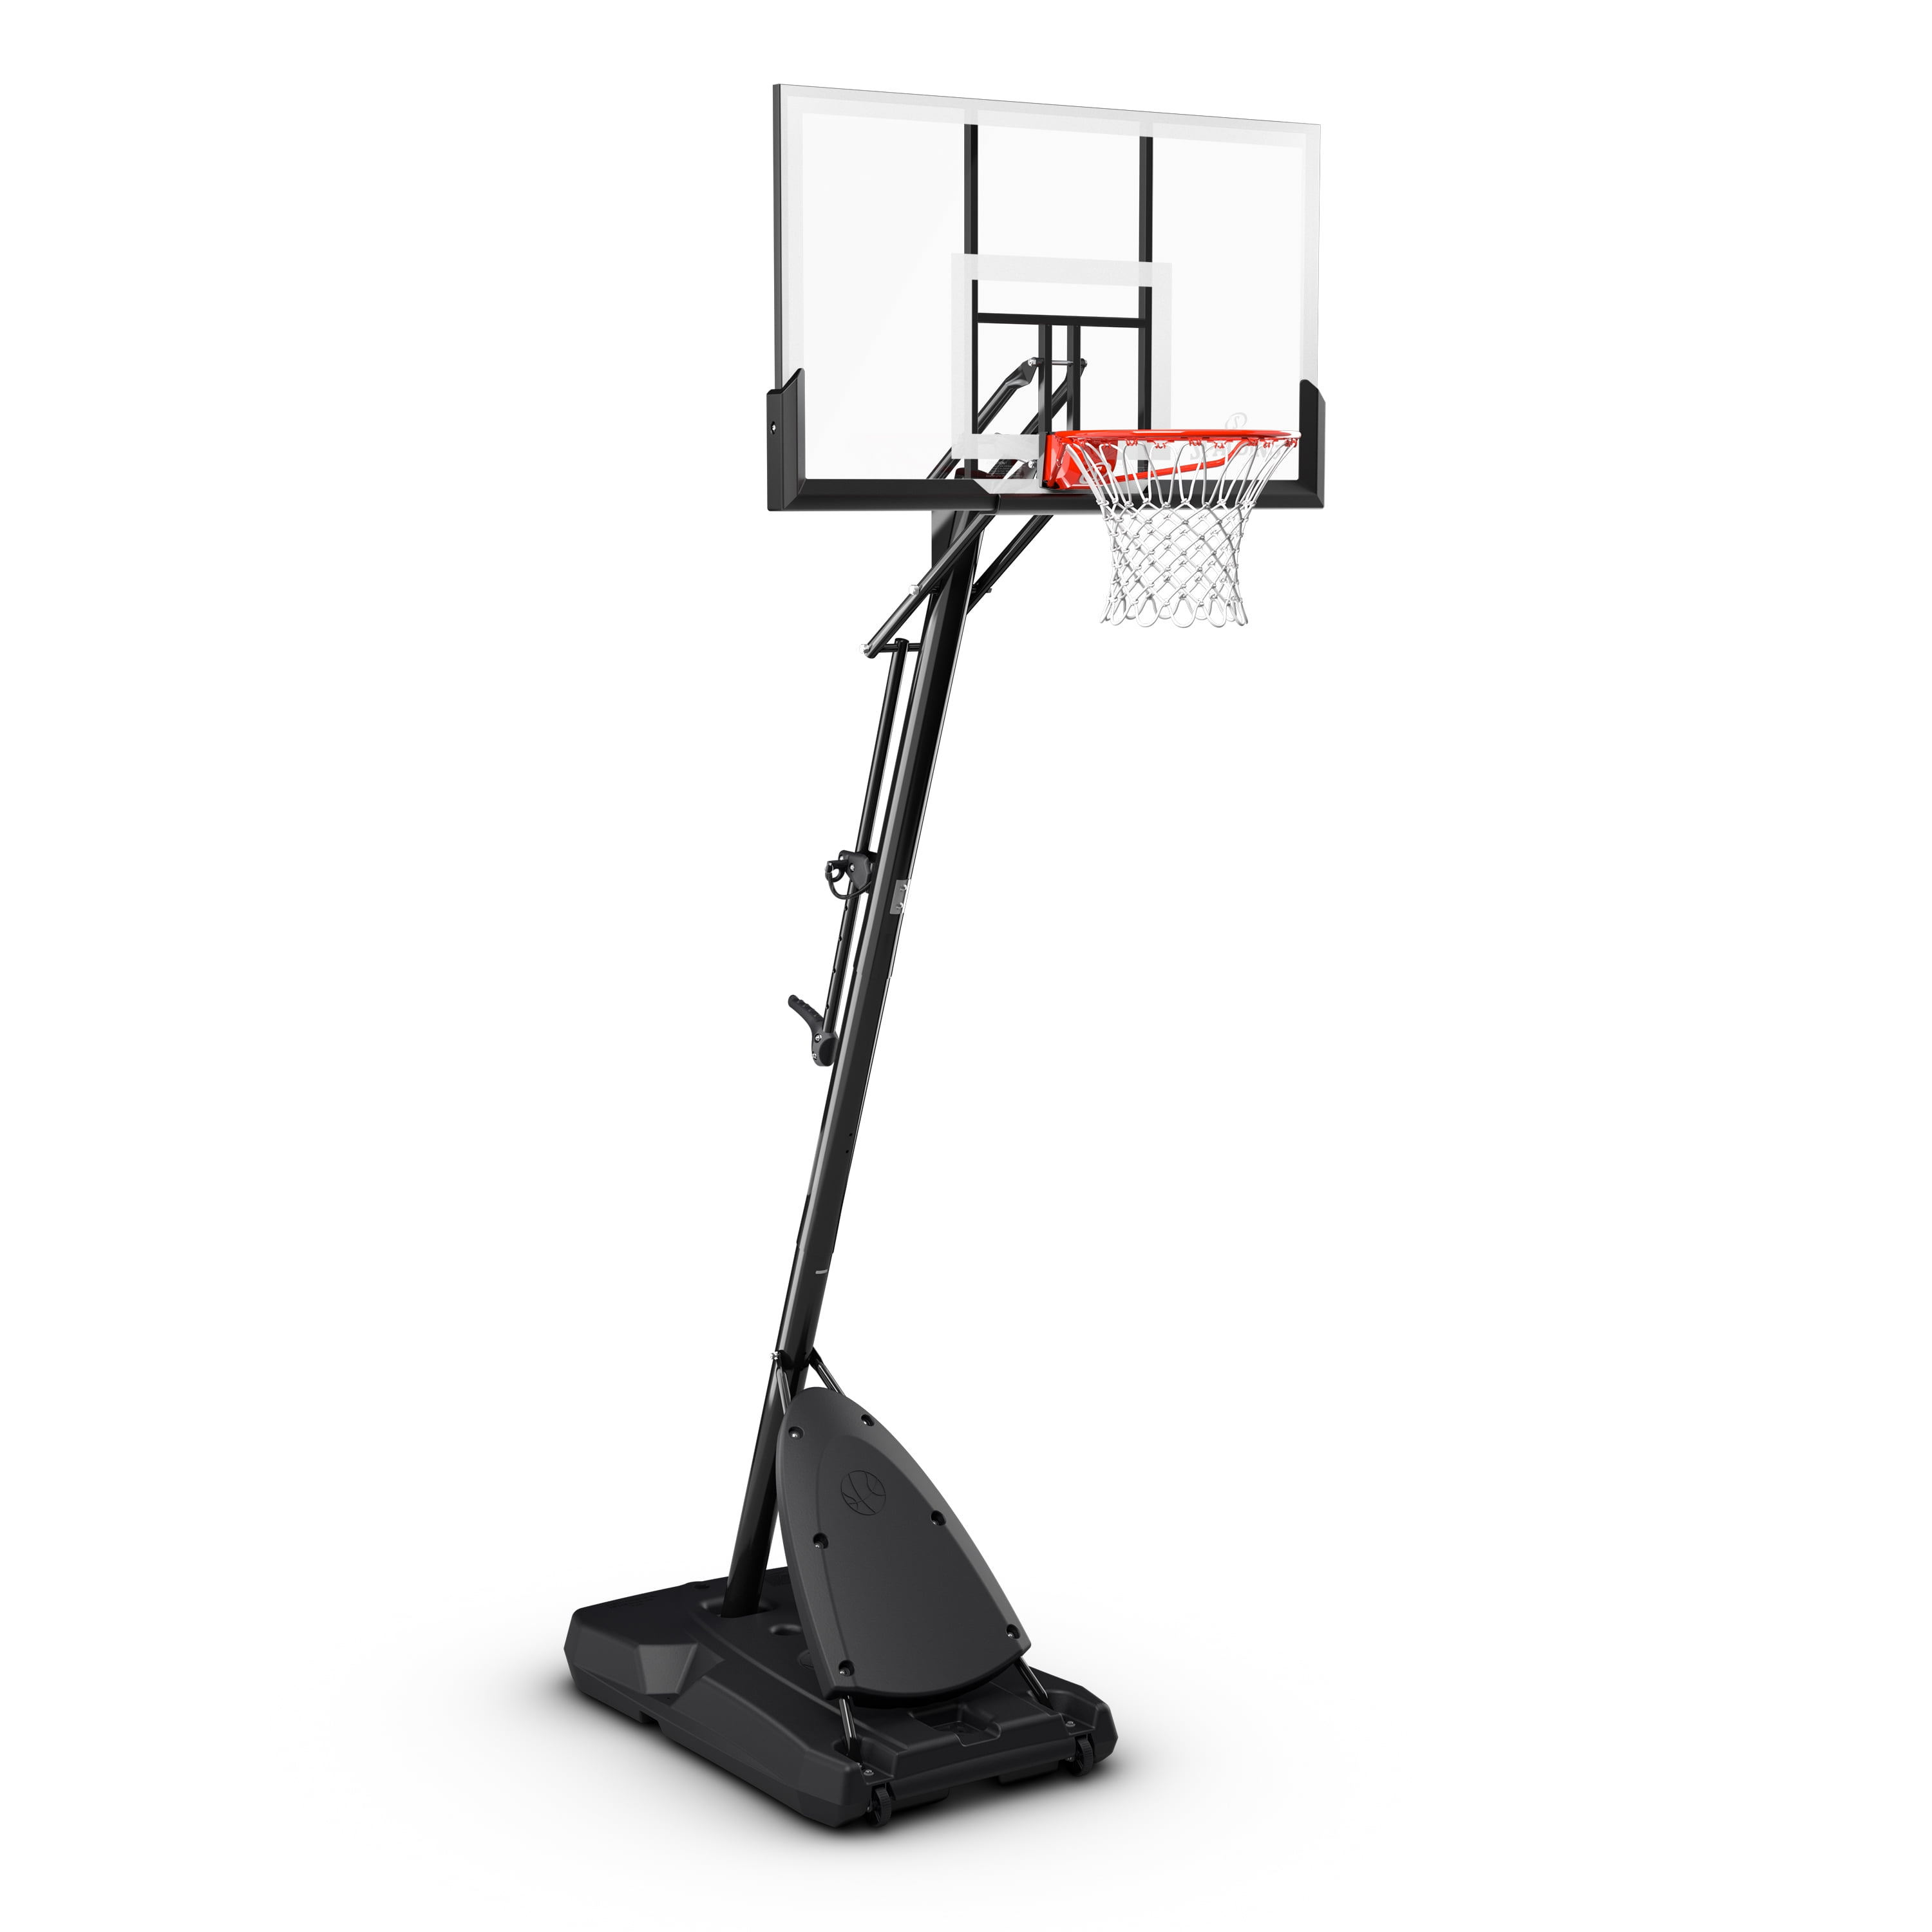 Lifetime 90759 44 inch Adjustable Portable Basketball Hoop for sale online 